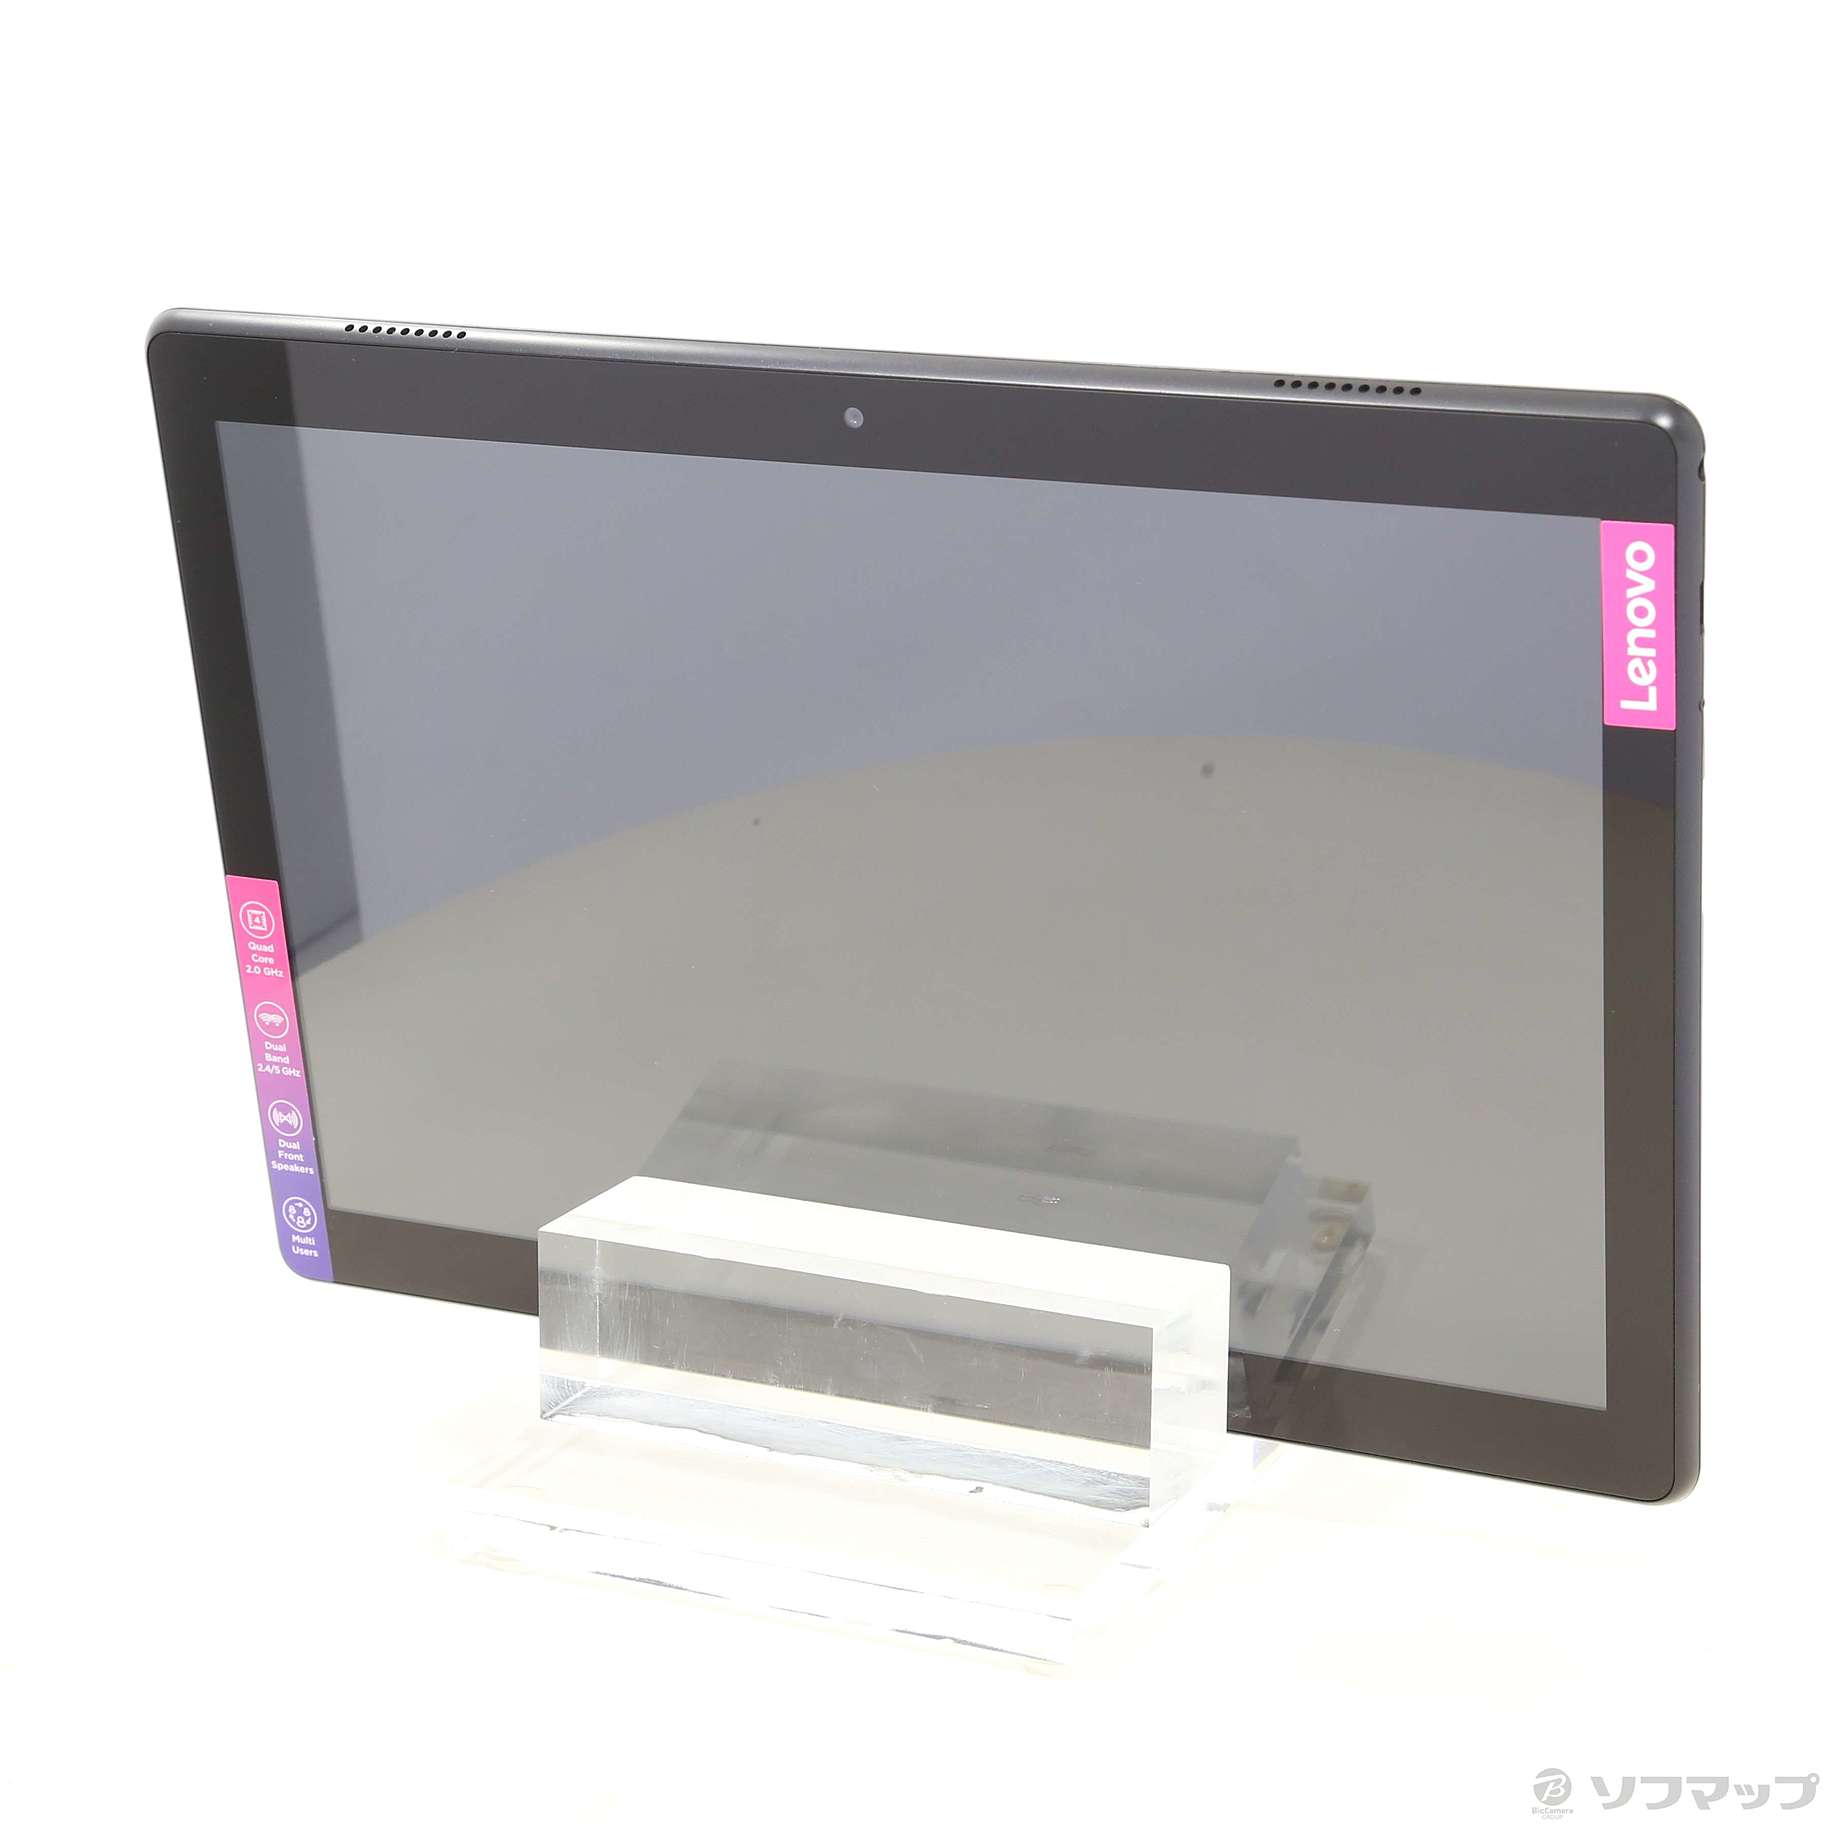 中古】Lenovo Smart Tab M10 with Amazon Alexa 16GB スレートブラック